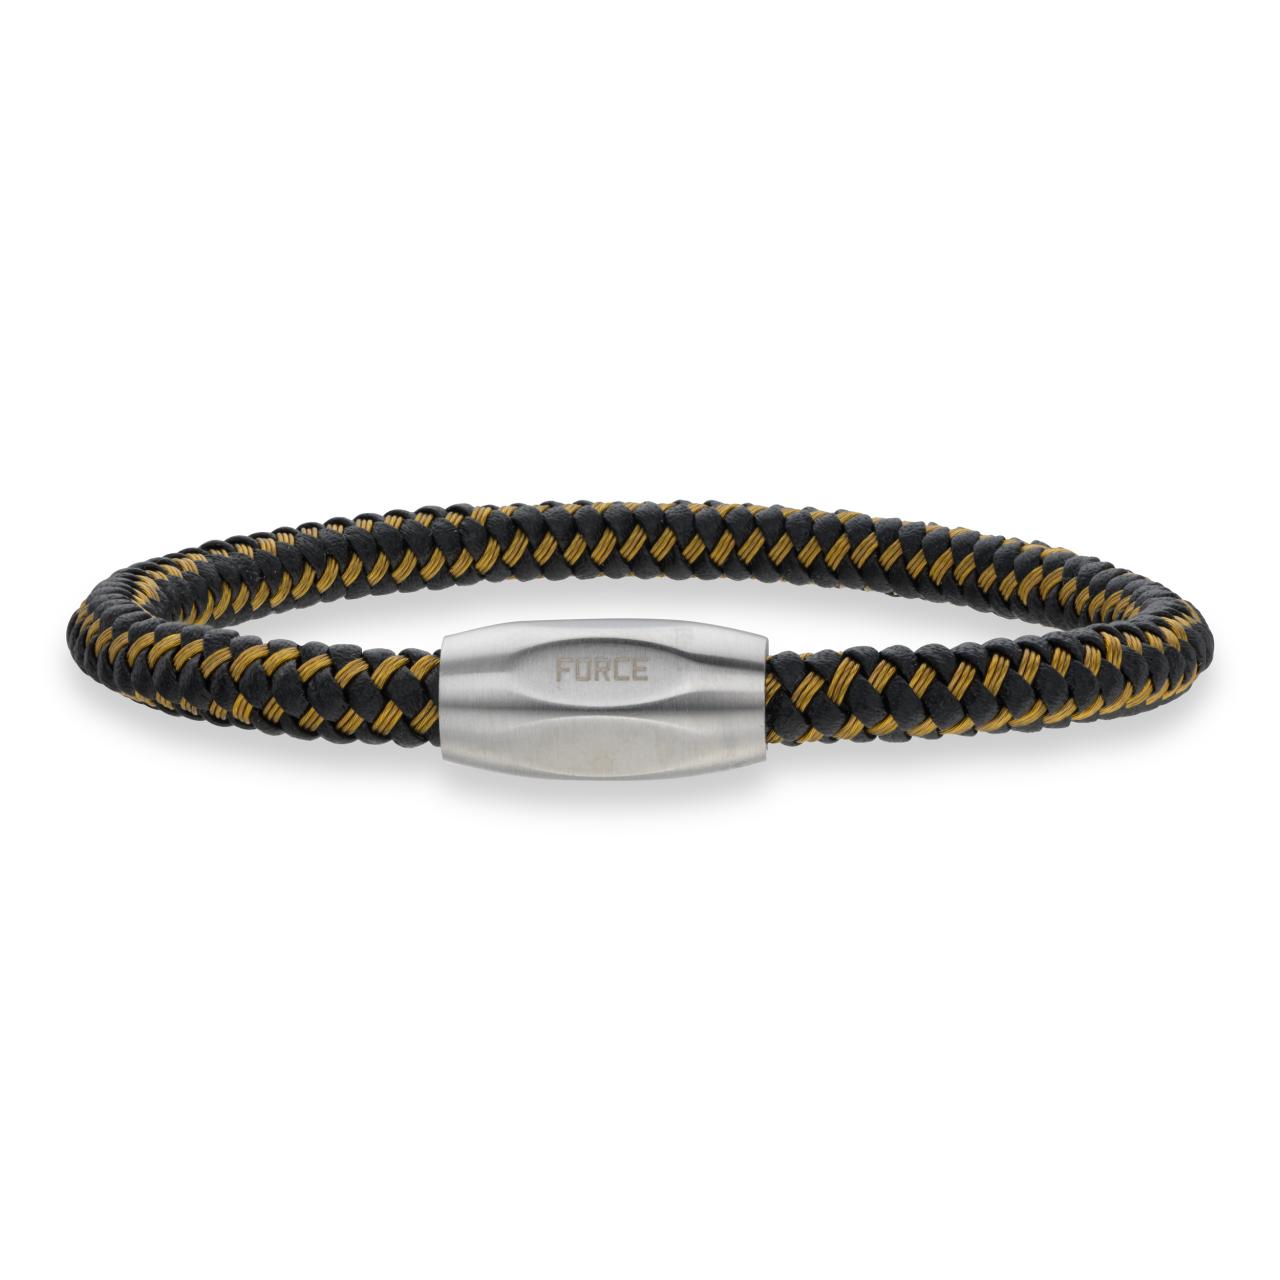 *Force armbånd guld kabel/sort læder stål lås 19cm